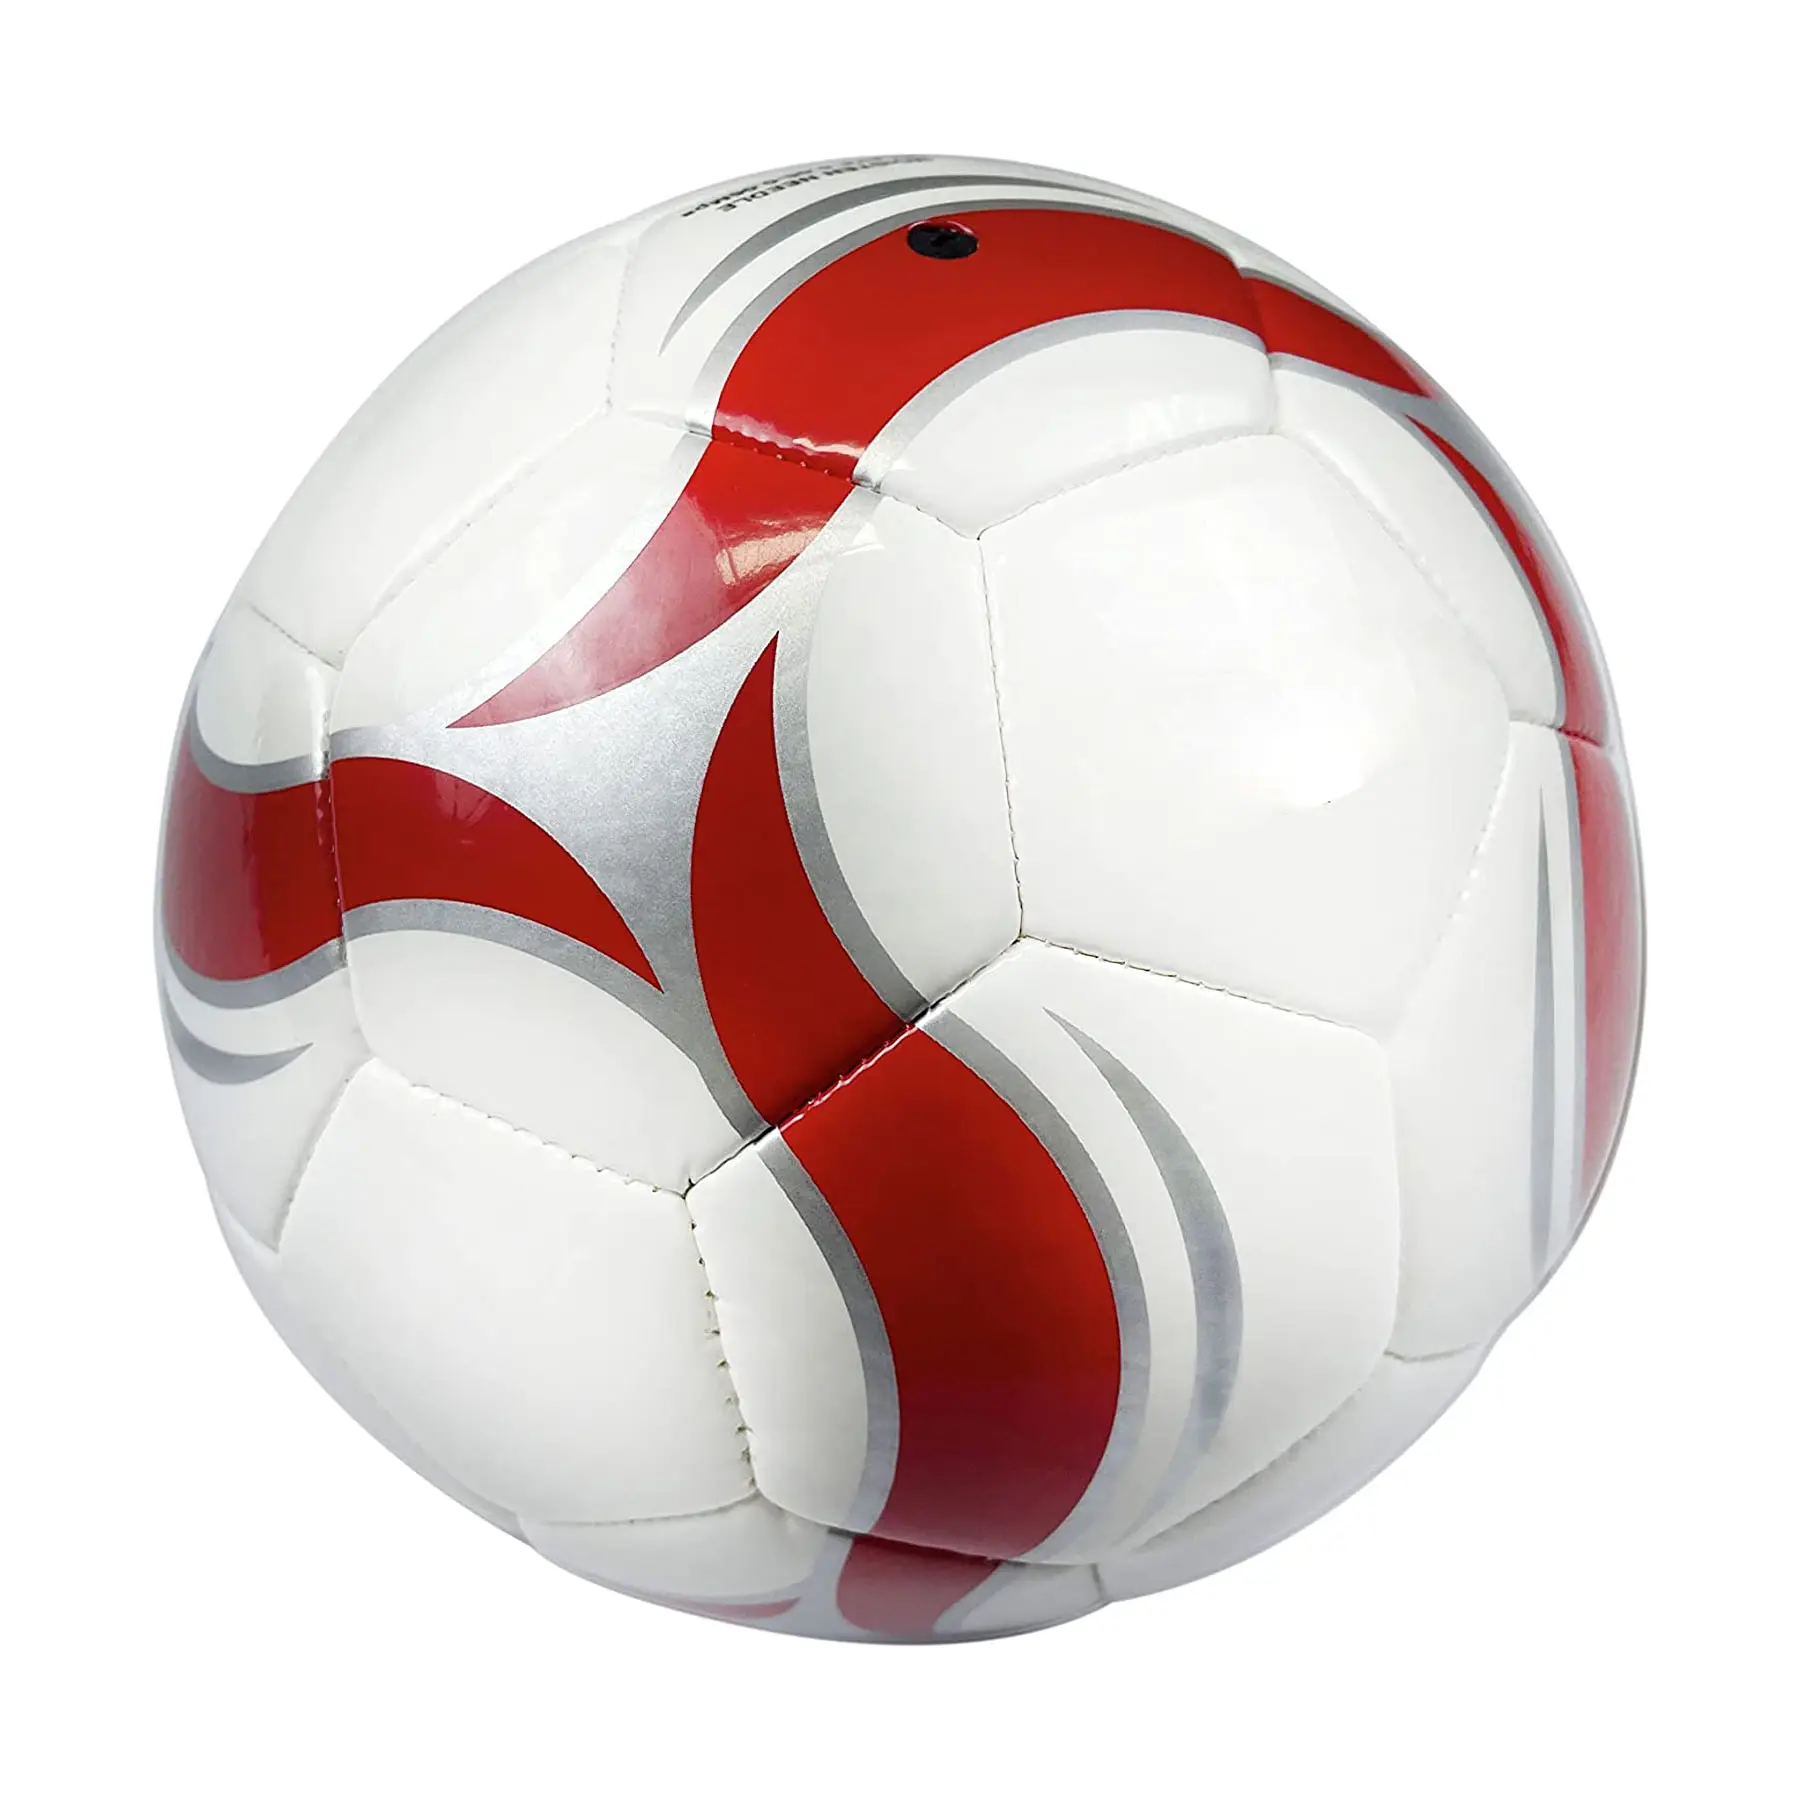 Низкая цена и высокое качество печать на заказ Производитель индивидуальный футбольный мяч стандартного размера под заказ футбольный мяч спортивное оборудование